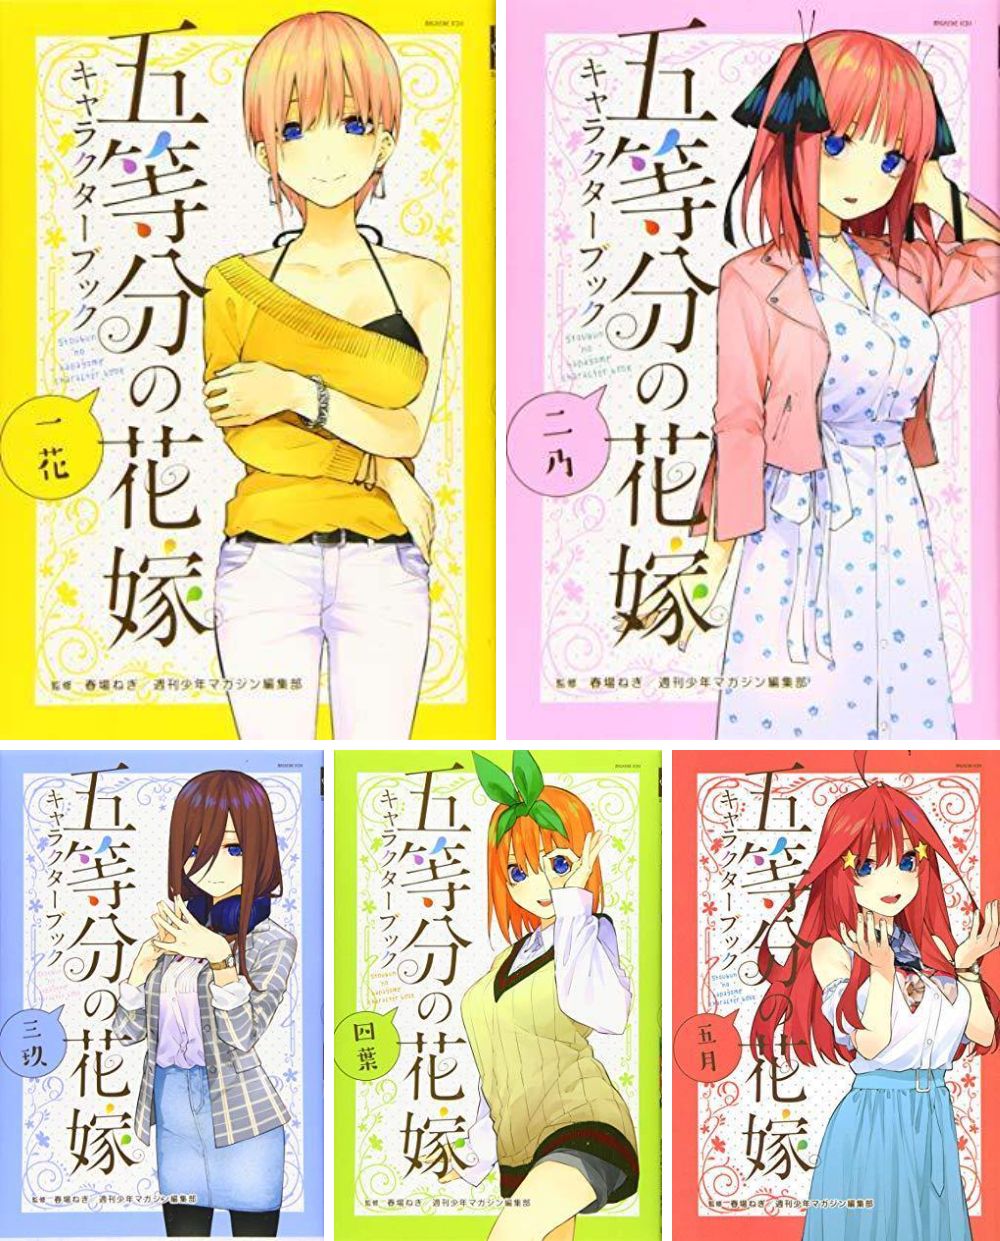 Go-tobun no Hanayome (The Quintessential Quintuplets) Character Vol.3 -  ISBN:9784065173619